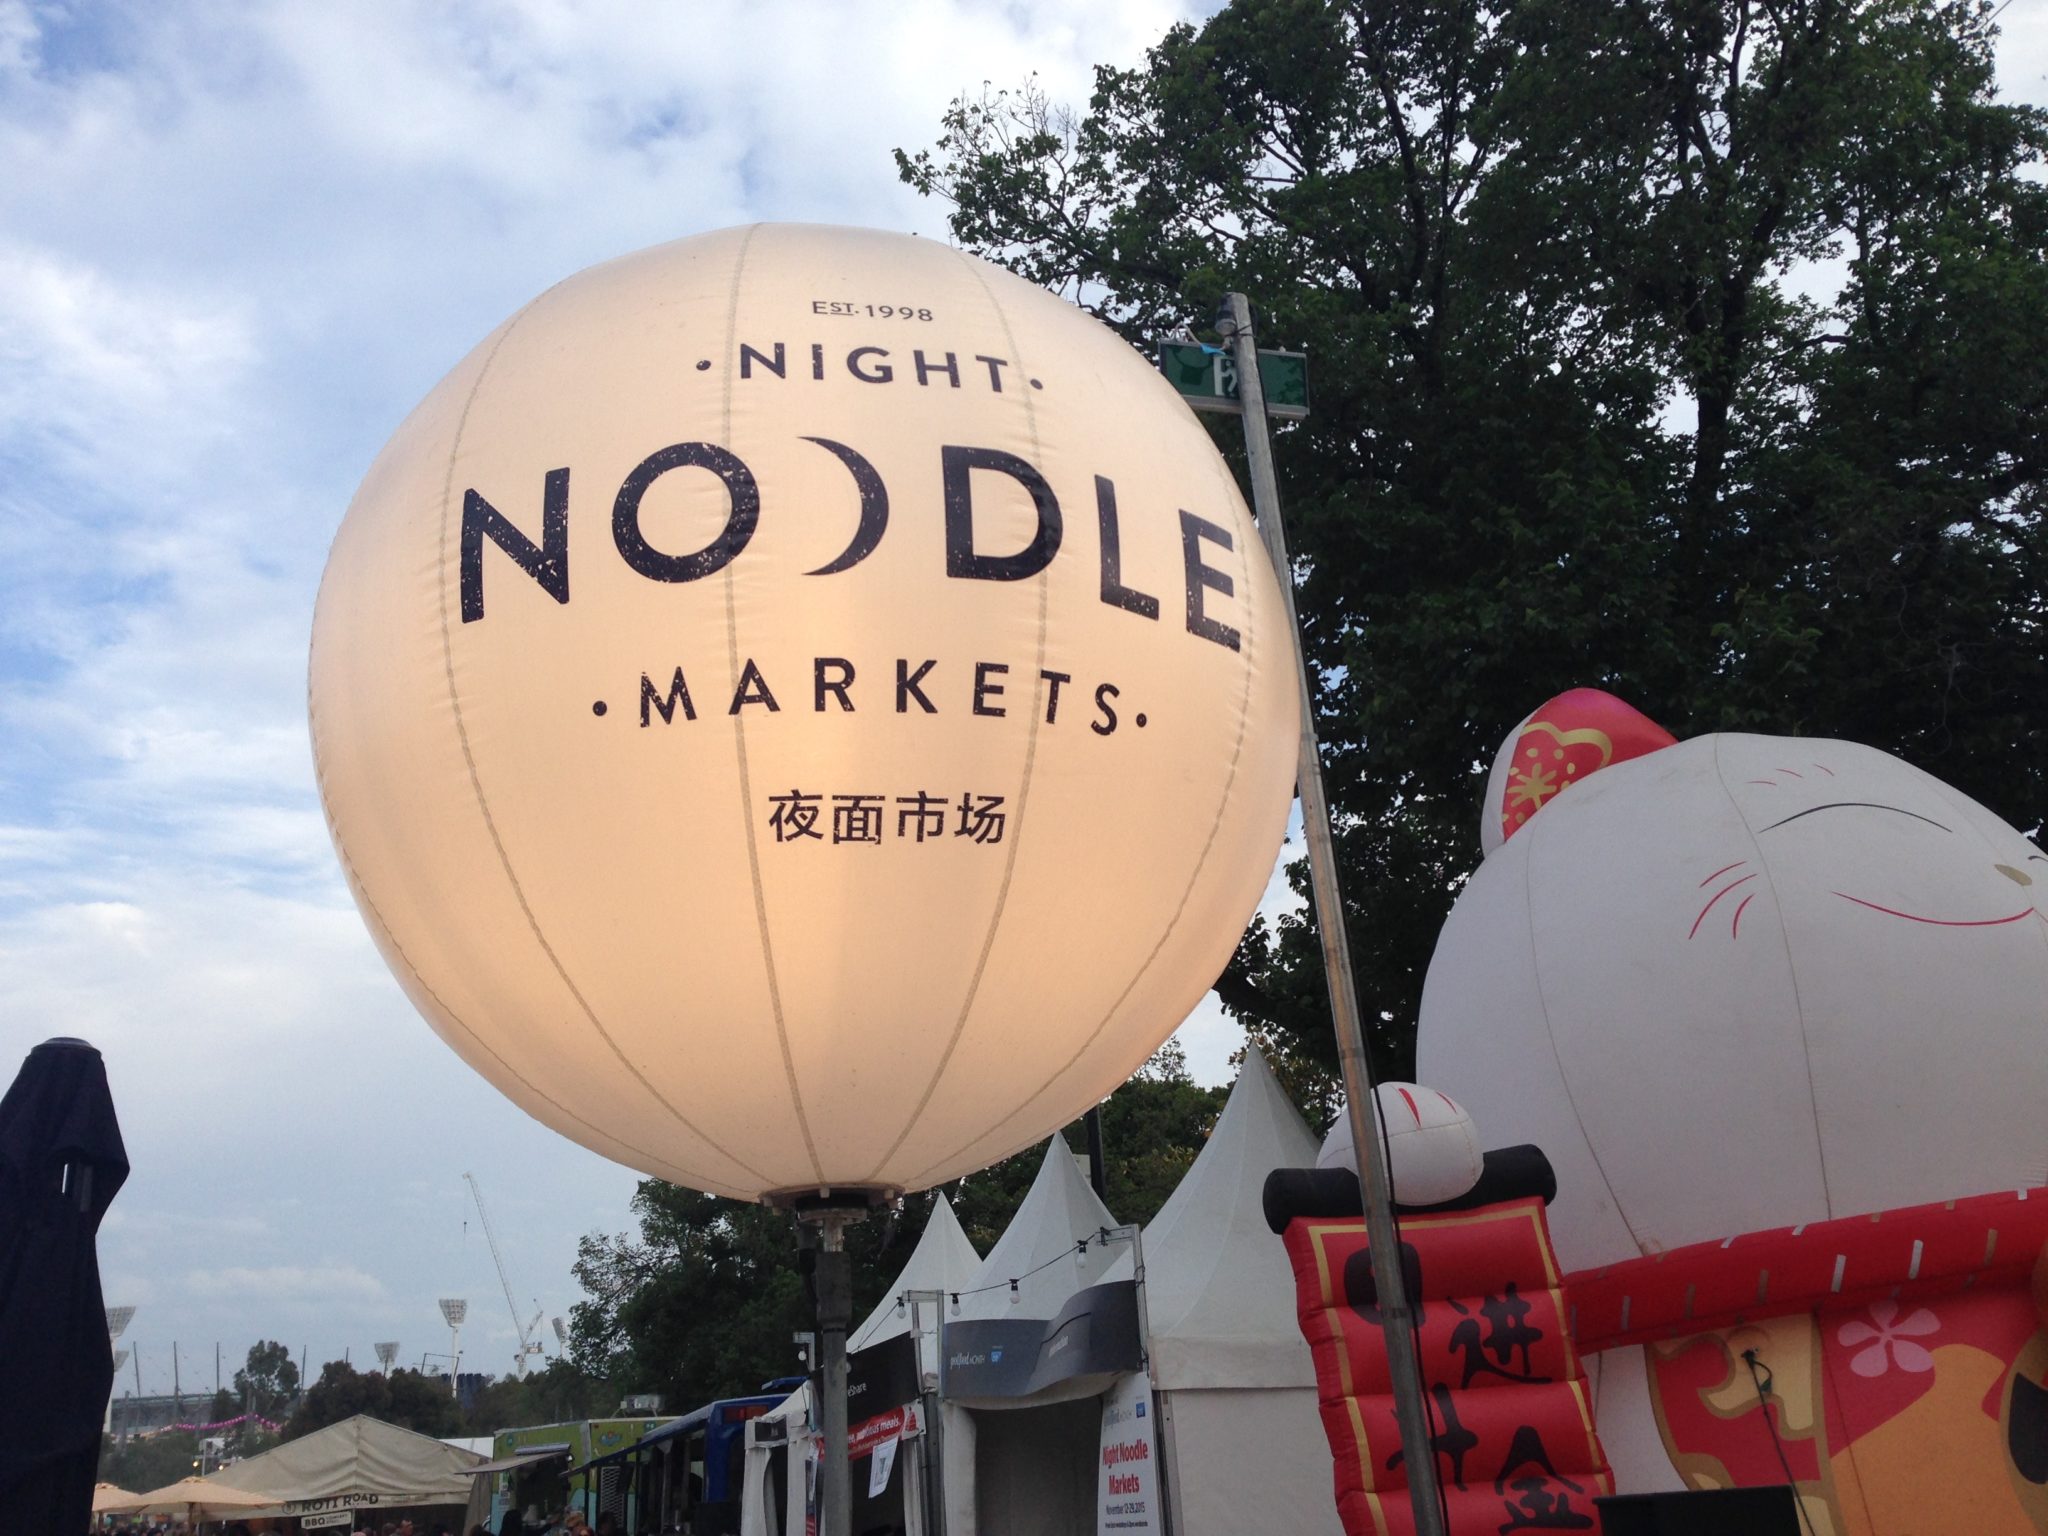 noodle markets